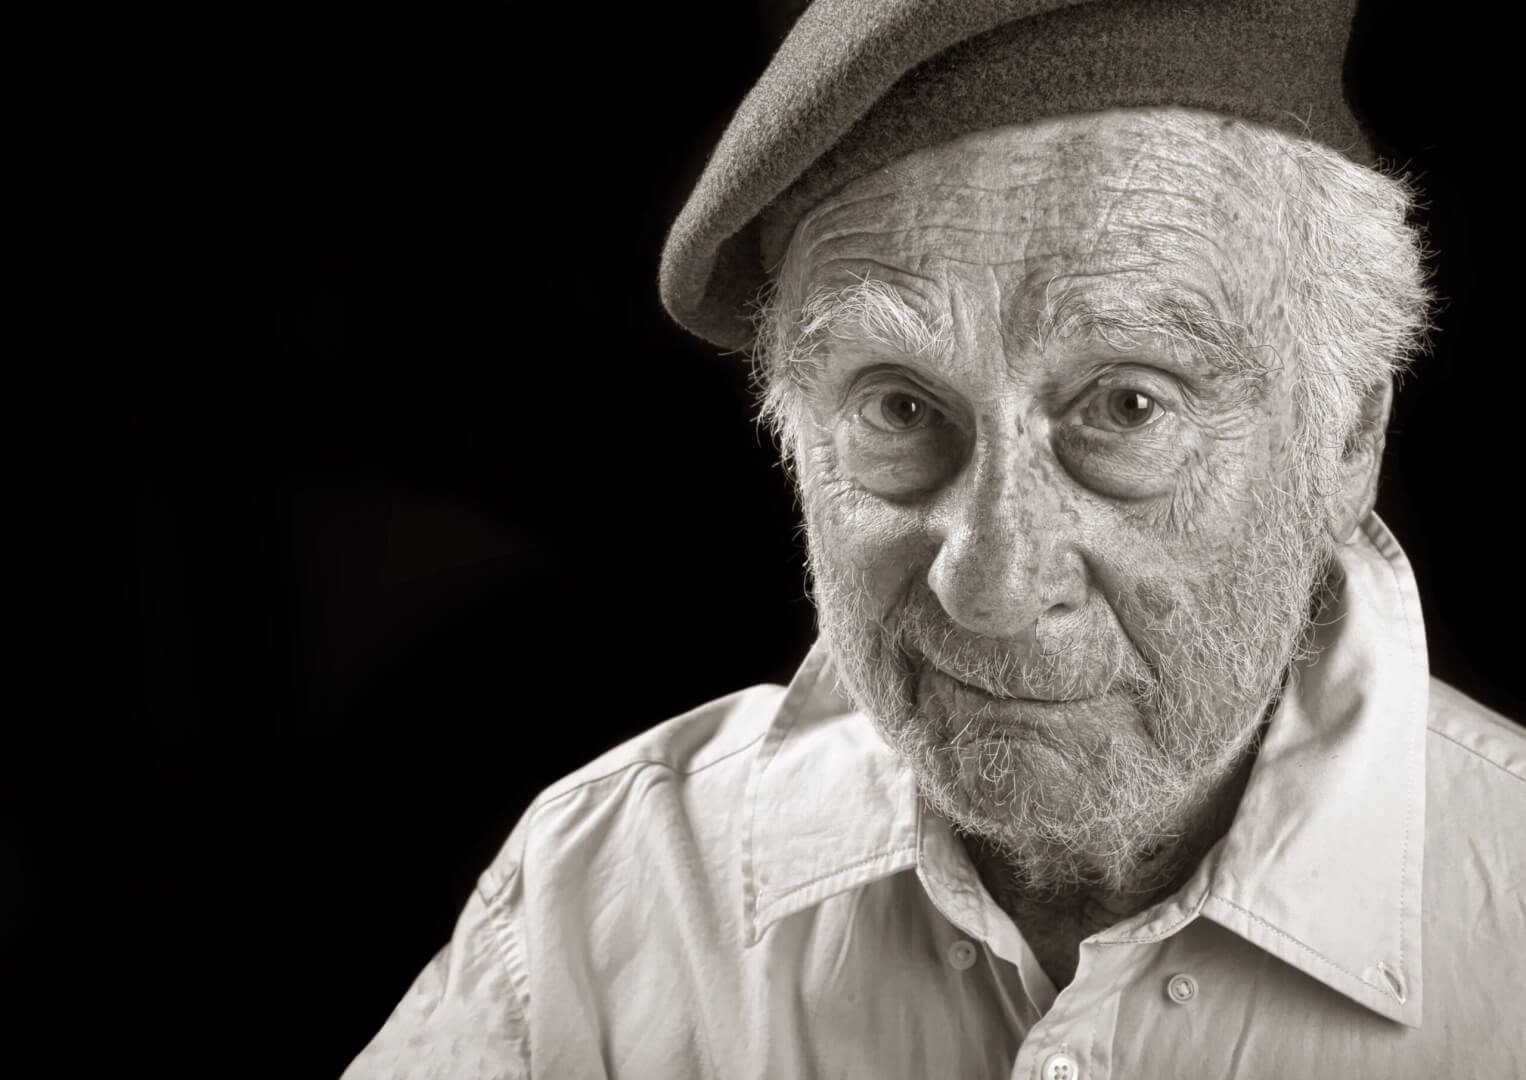 Un hombre mayor posa en una imagen en blanco y negro con una boina.